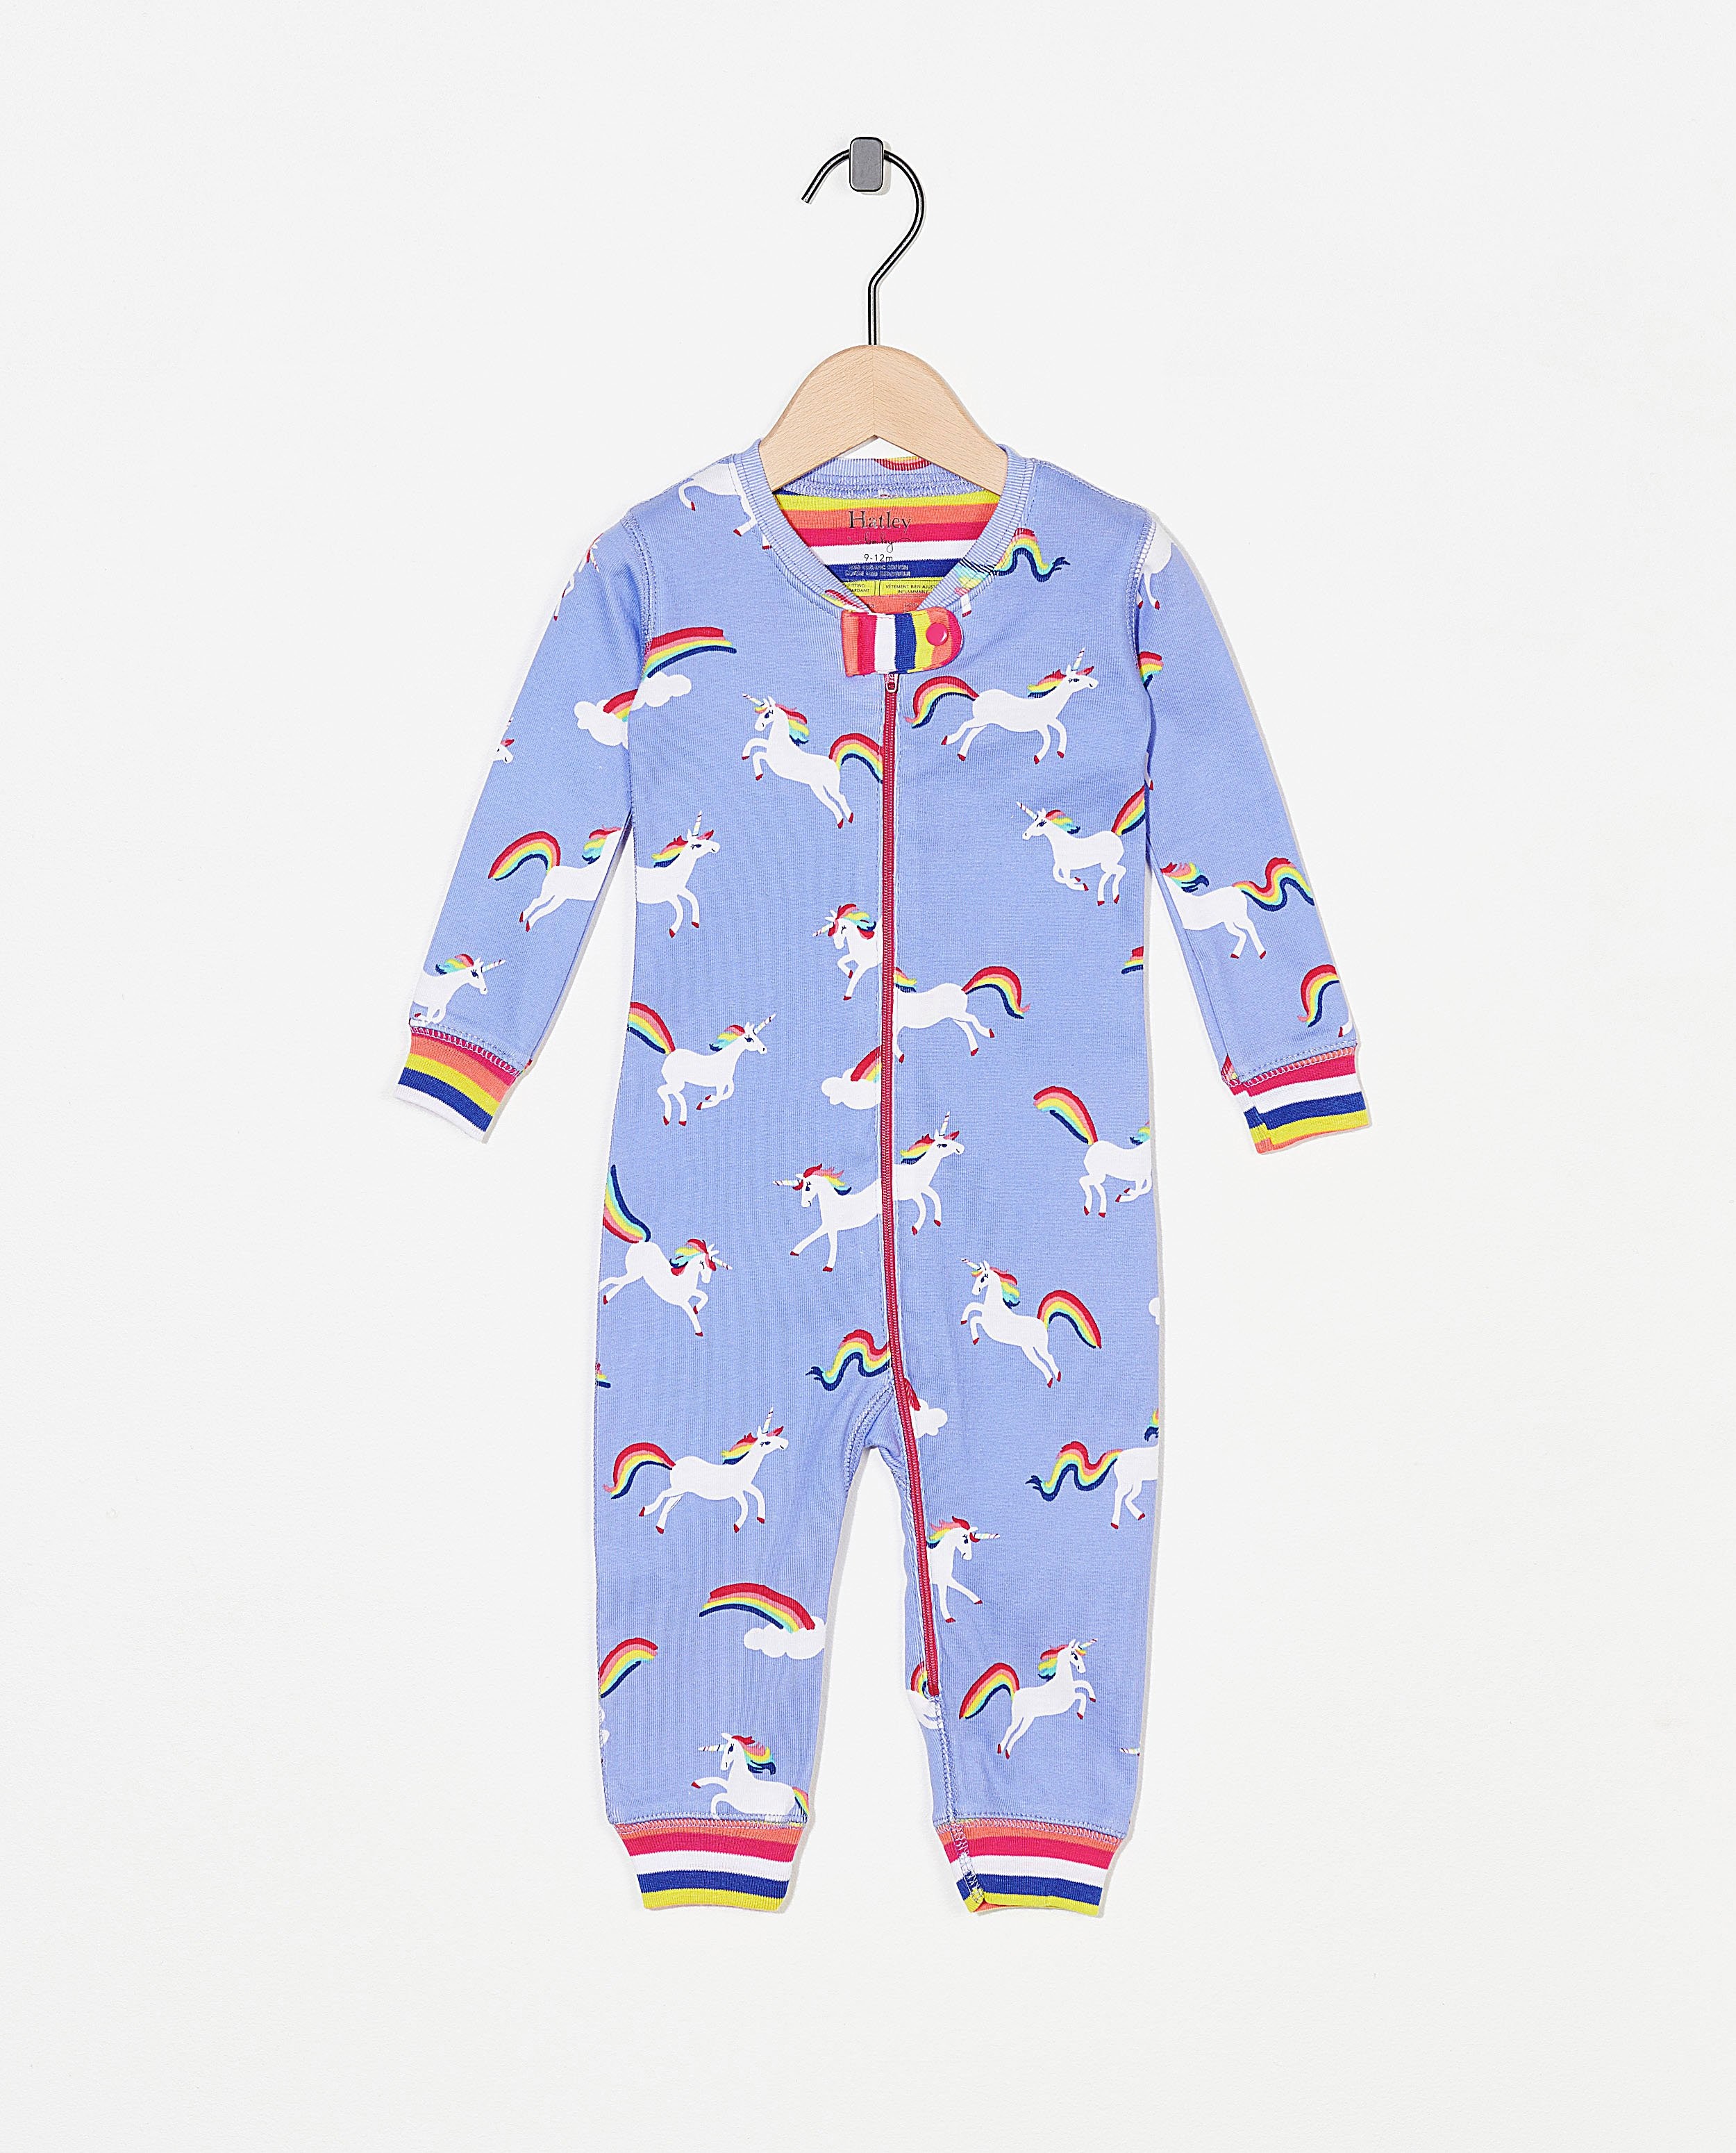 Blauwe pyjama met print Hatley - eenhoorn - Hatley